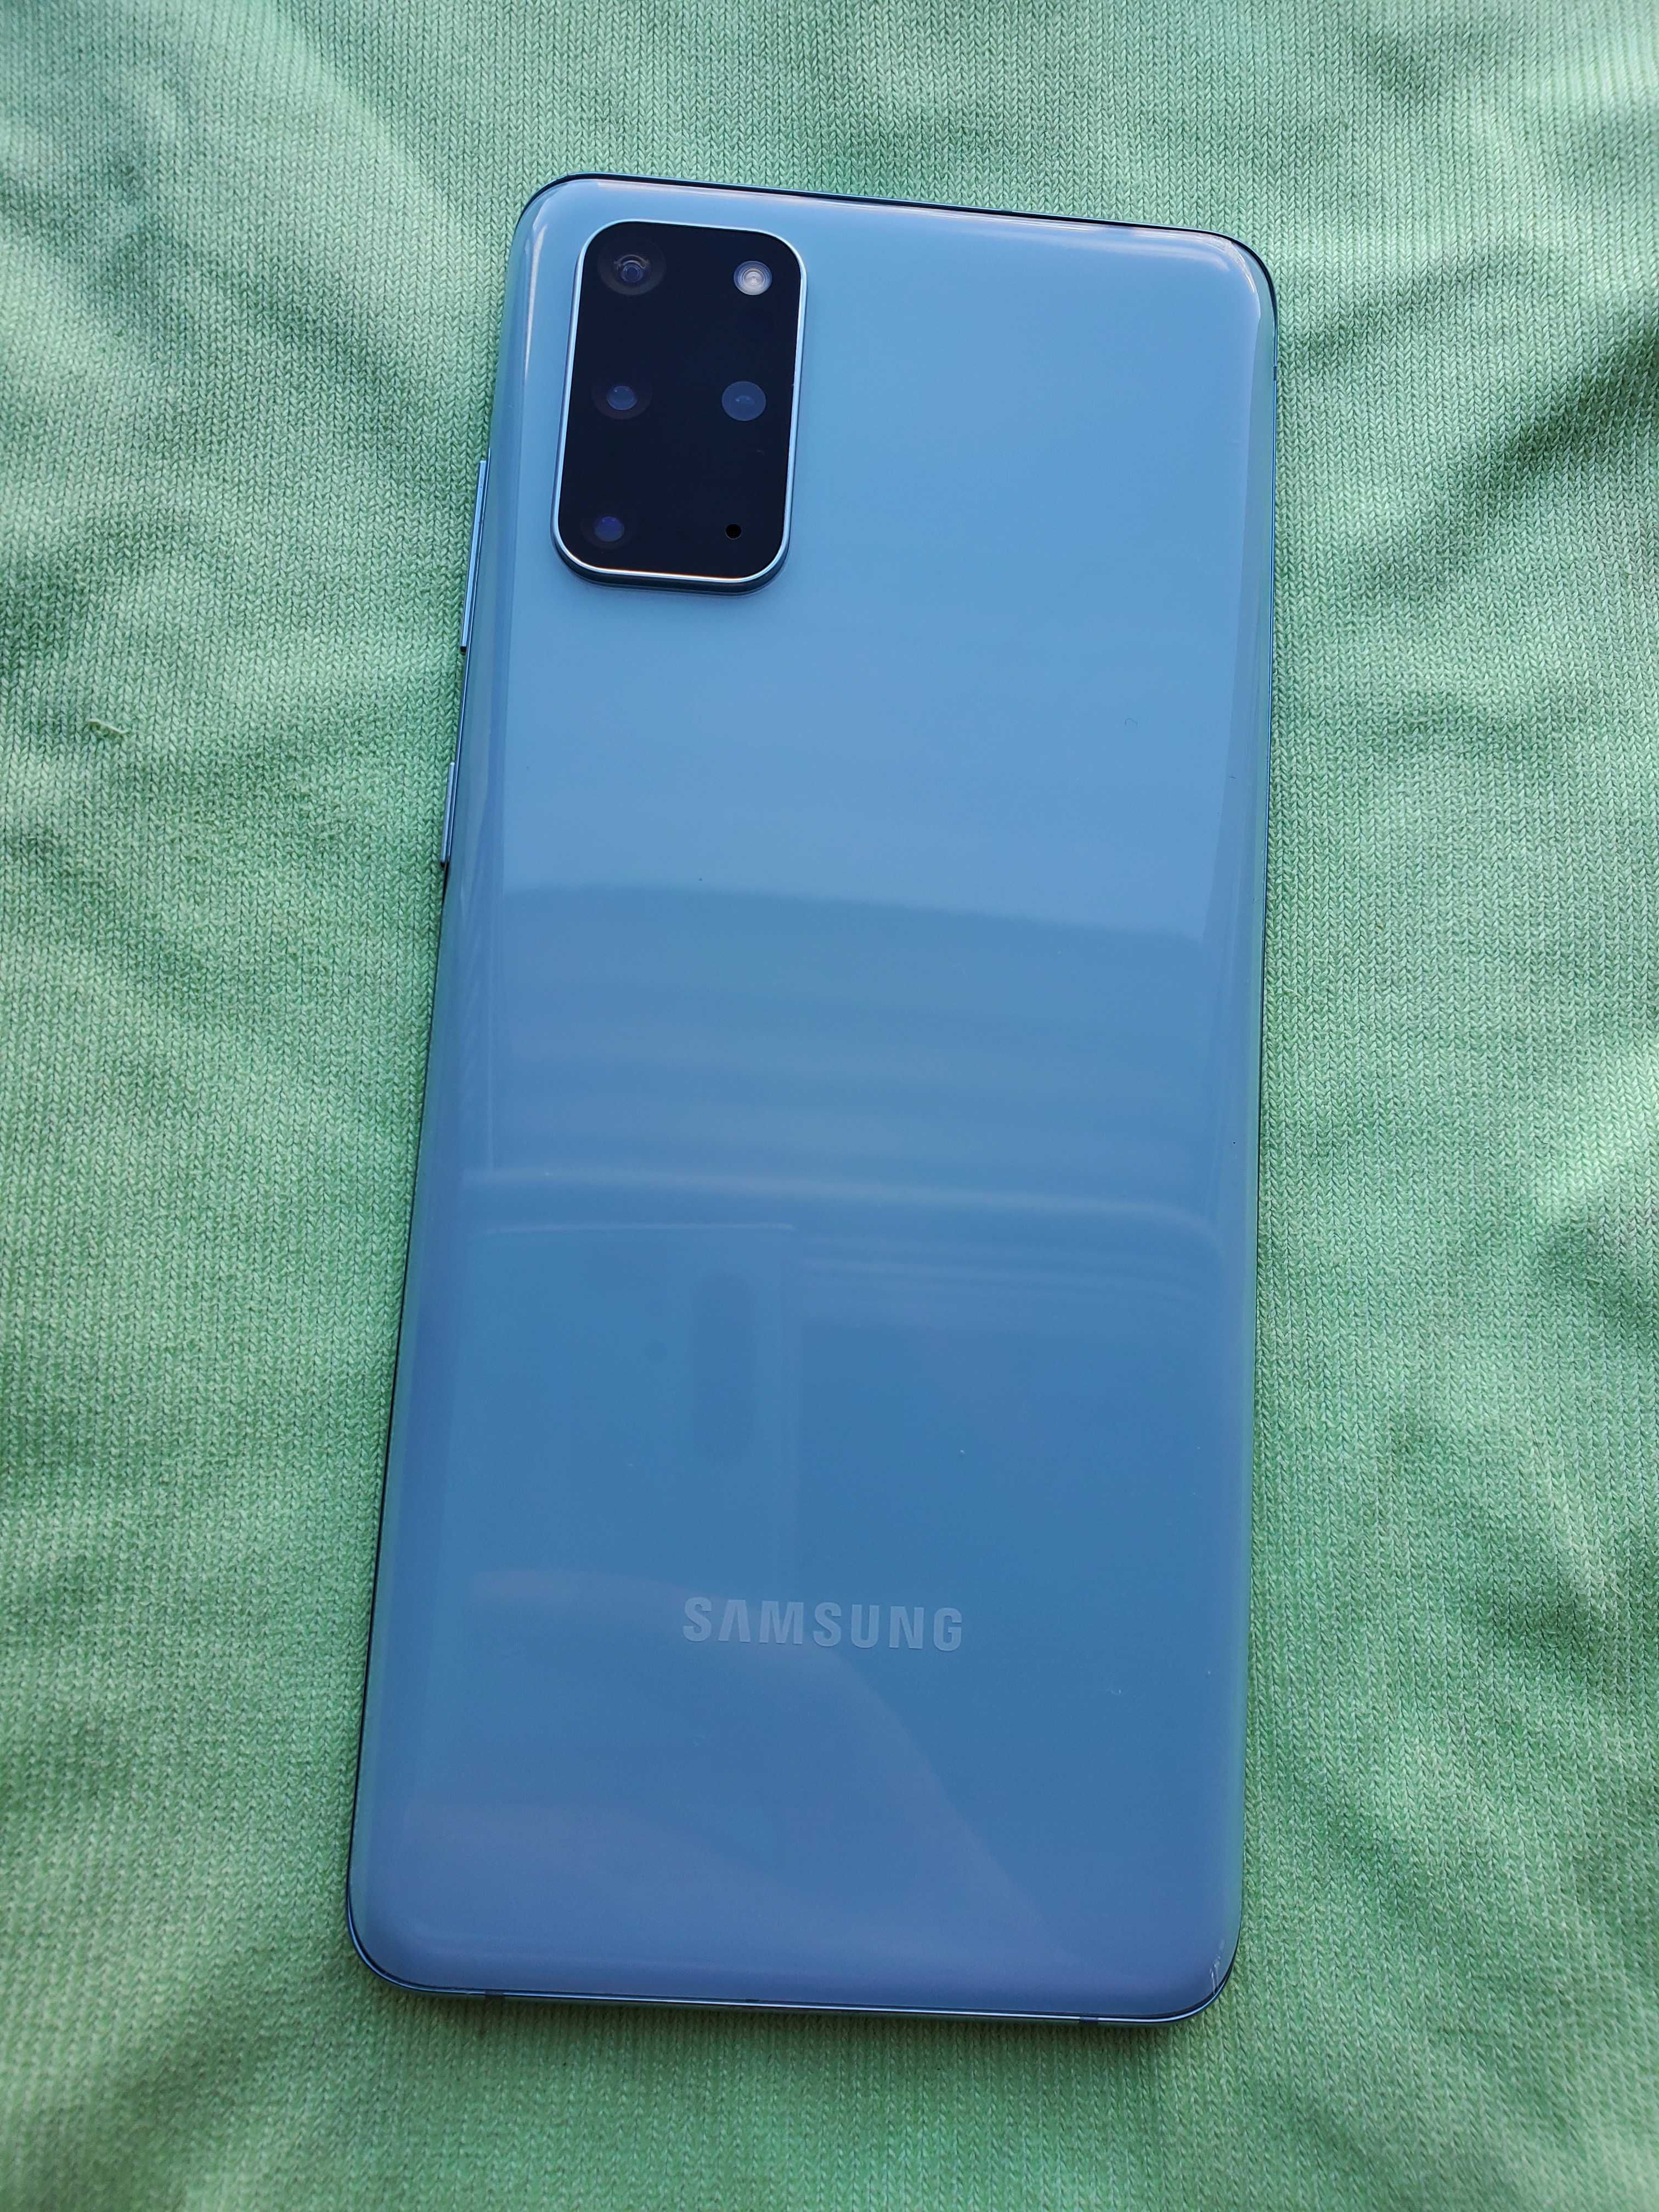 Samsung Galaxy S20+ 5G 120Hz SM-G986U1 12/128GB Blue Snapdragon